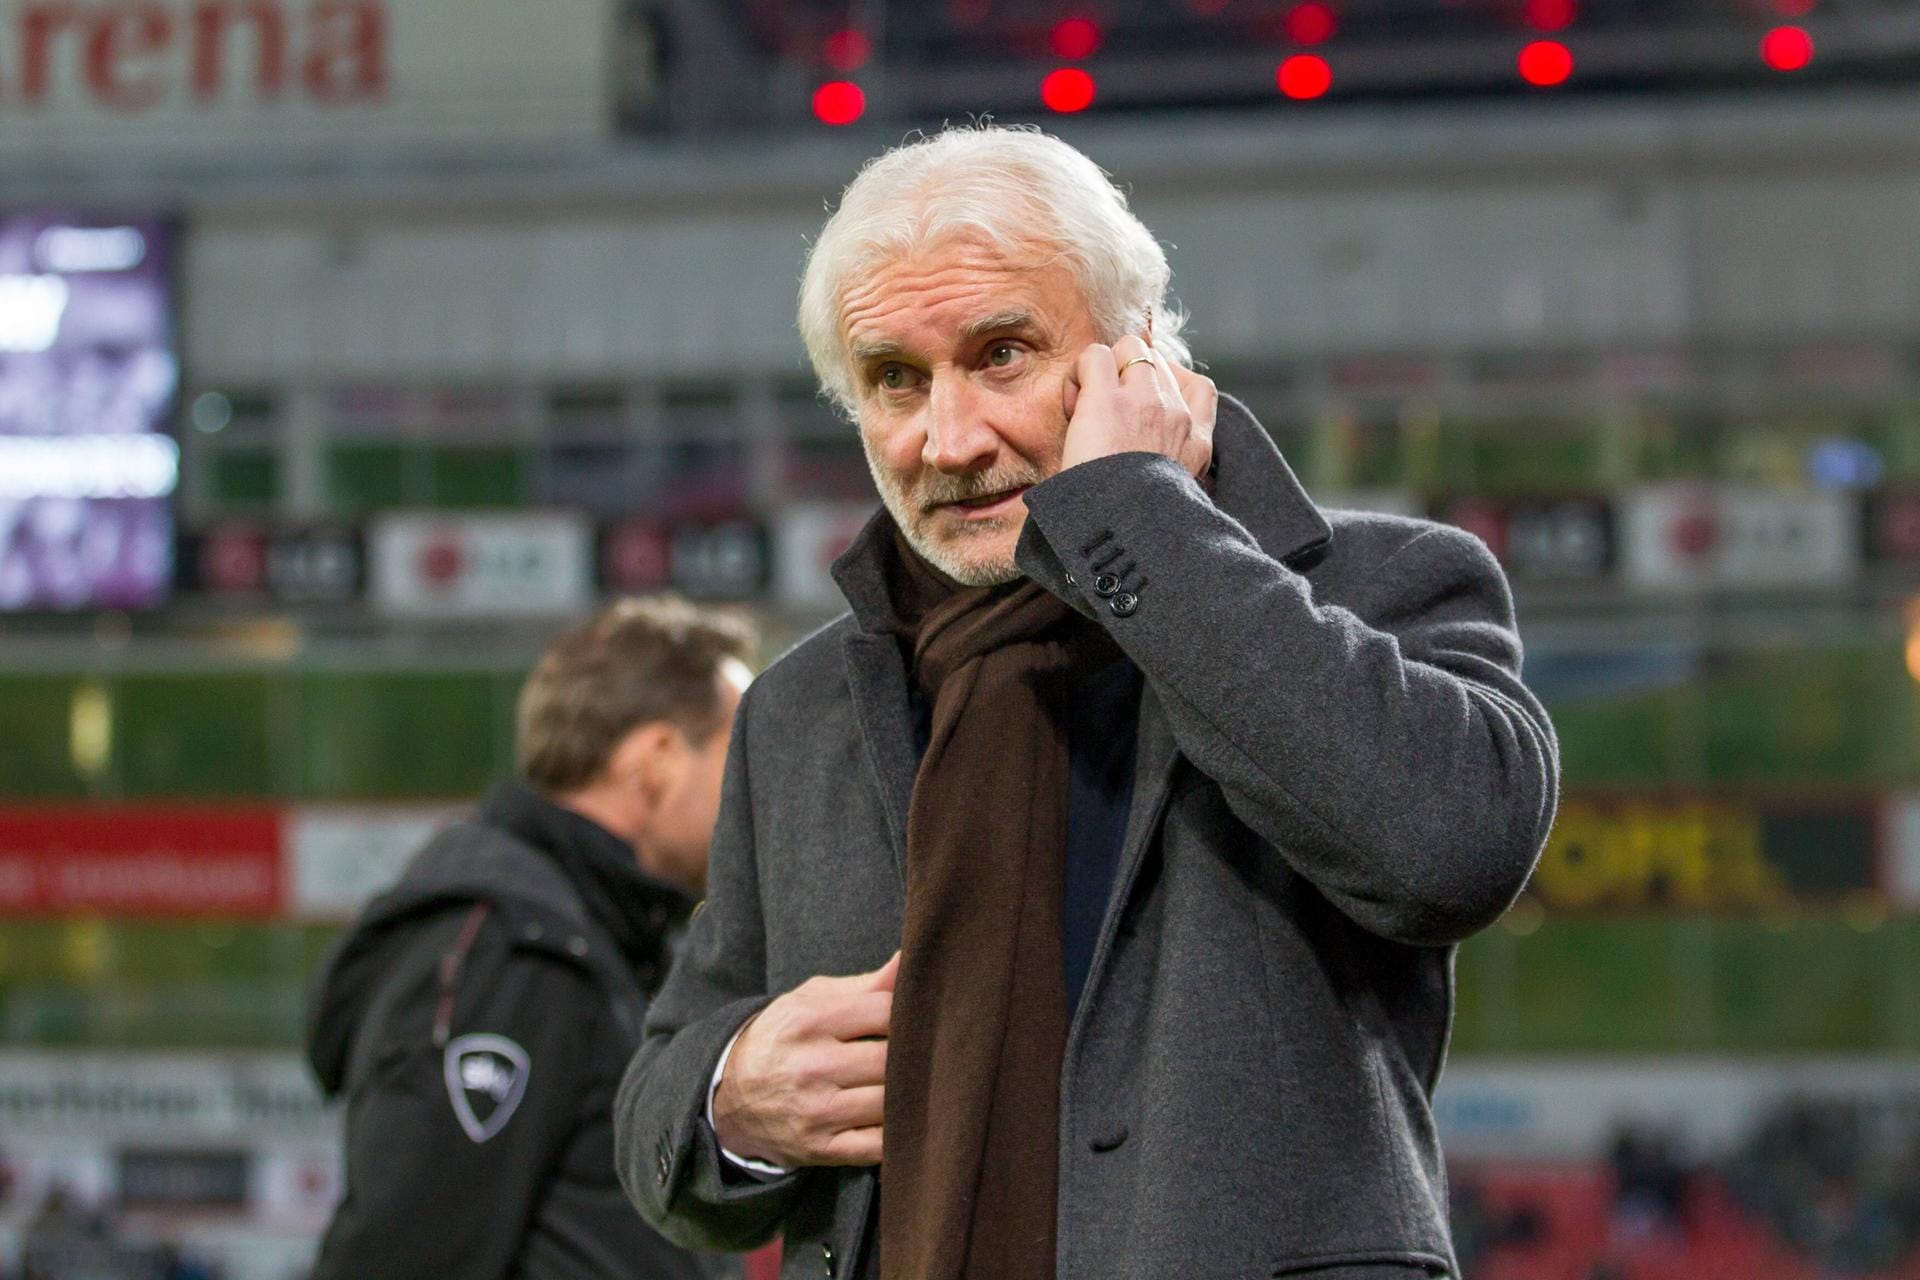 Rudi Völler: Seit mehr als 30 Jahren erfolgreich im Geschäft. Als Spieler 1993 Champions-League-Sieger, als DFB-Teamchef 2002 Vize-Weltmeister, seit 1996 mit Unterbrechungen Sportdirektor und auch zweimal Interimstrainer in Leverkusen. Seit 2023 Sportdirektor der Nationalmannschaft.